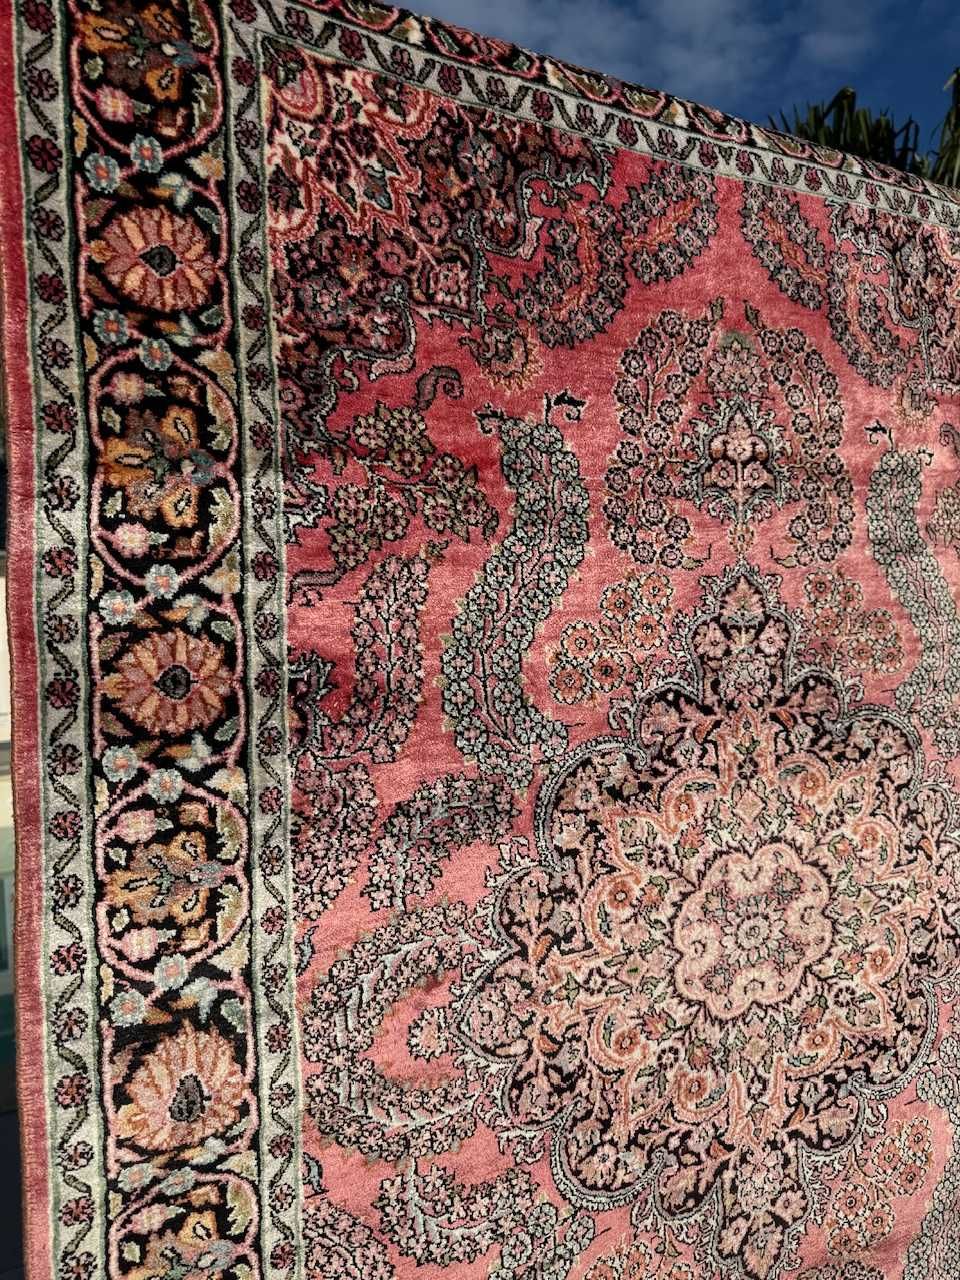 Nowy r.tkany jedwabny dywan perski  GHOUM 190x121 cm galeria 14 tyś